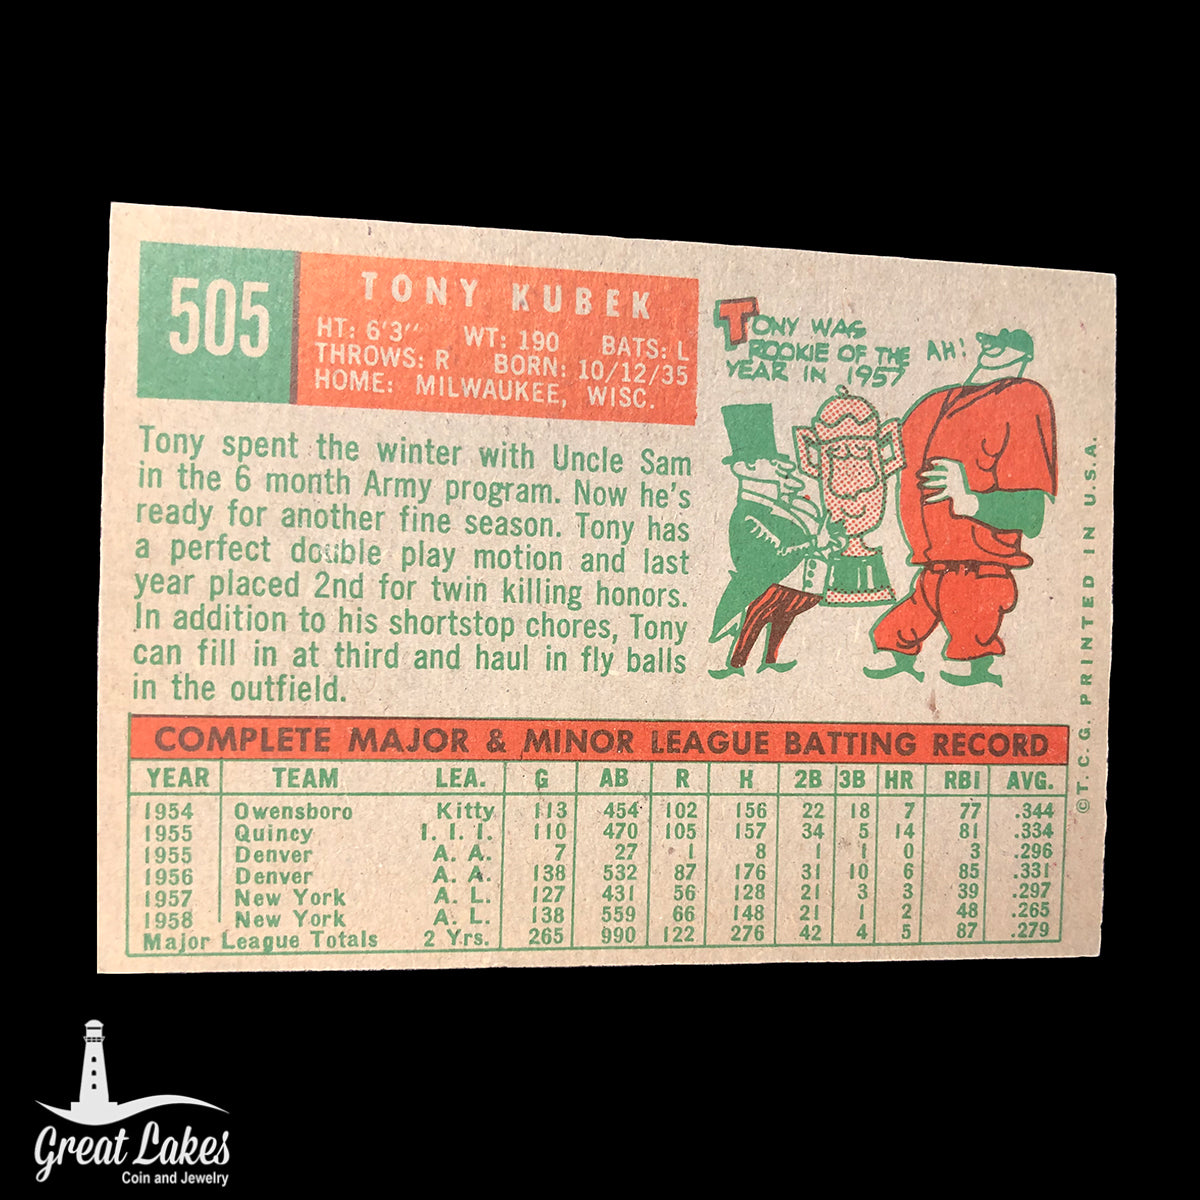 1959 Topps Tony Kubek Card #505